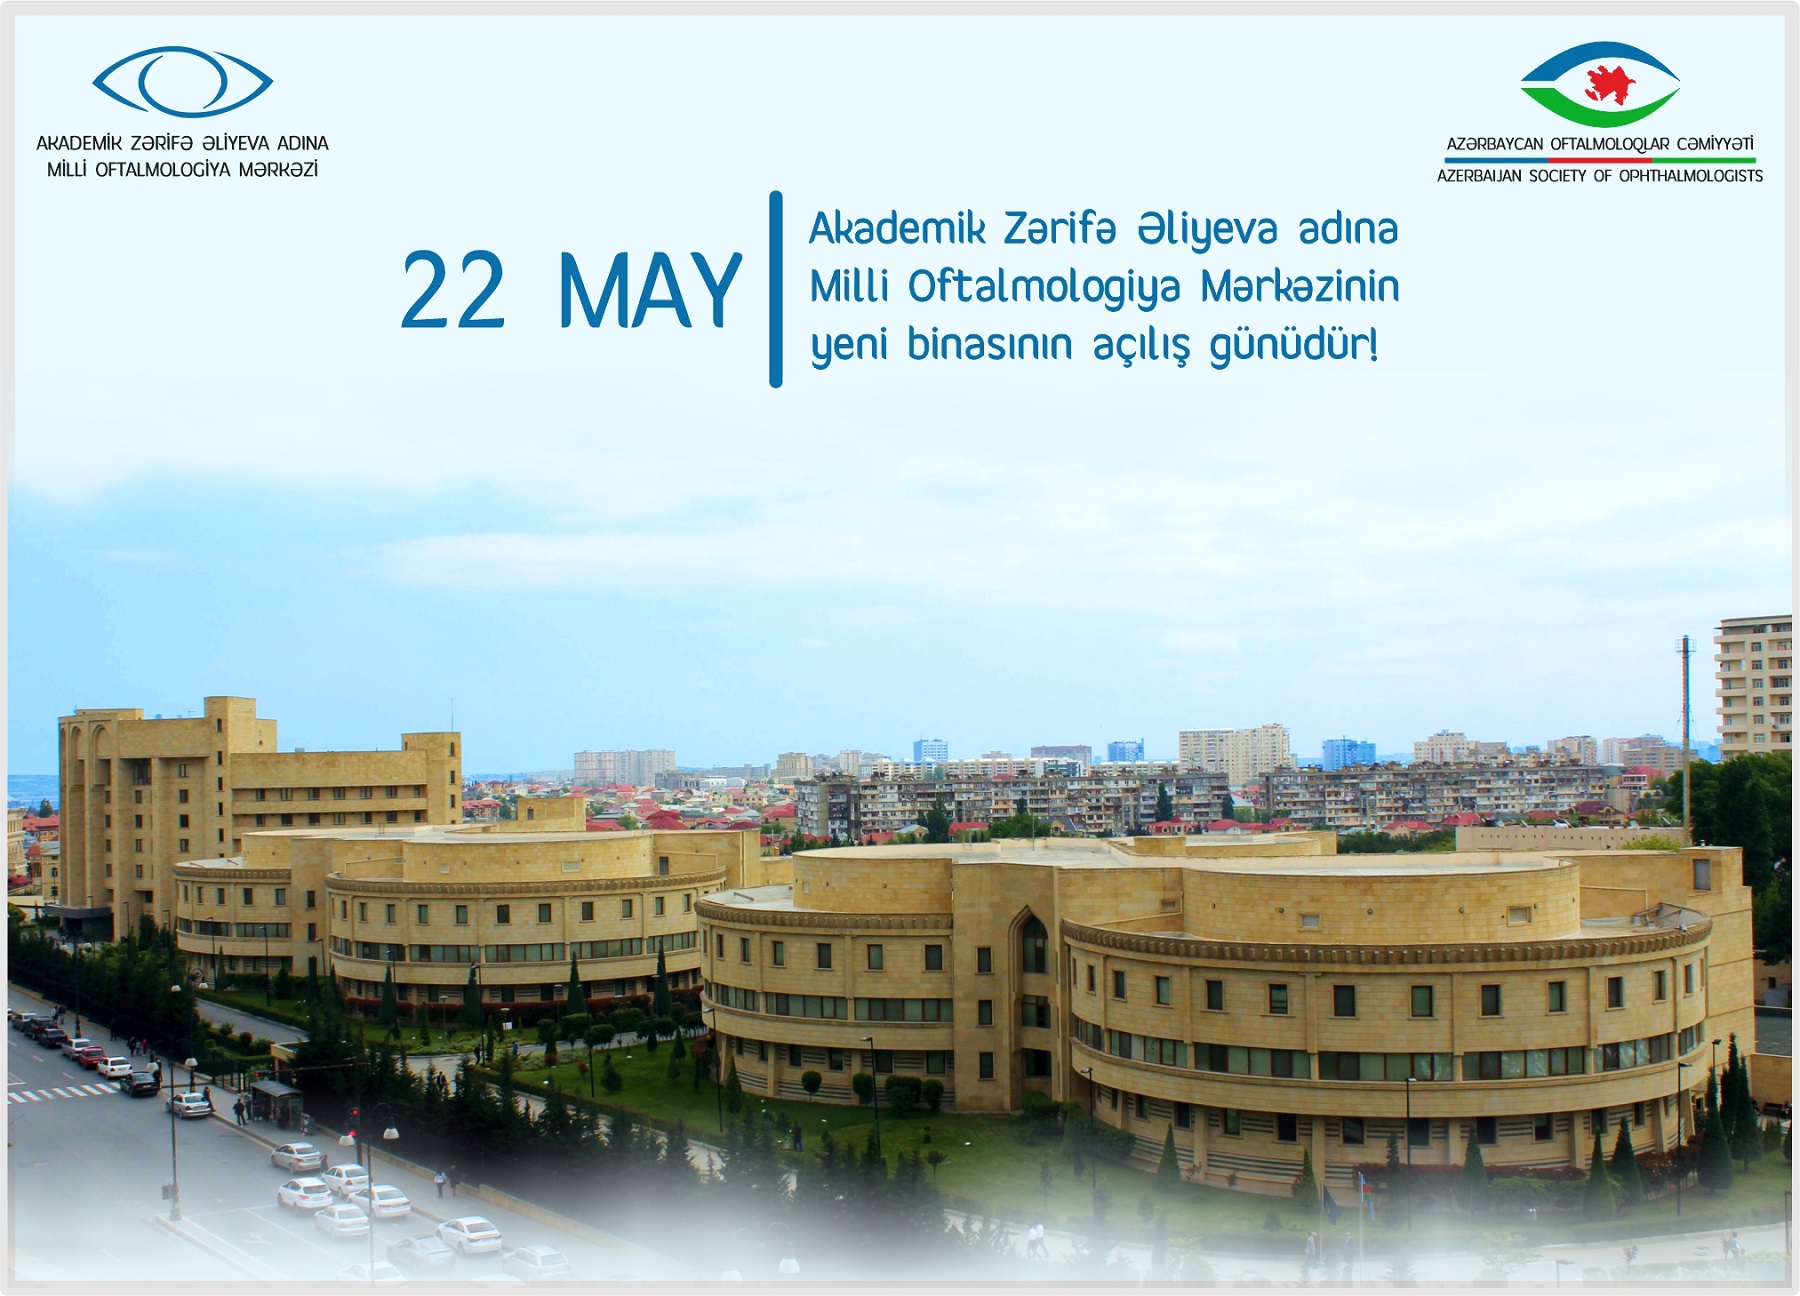 22 may Akademik Zərifə Əliyeva adına  Milli Oftalmologiya Mərkəzinin yeni binasının açılış günüdür!